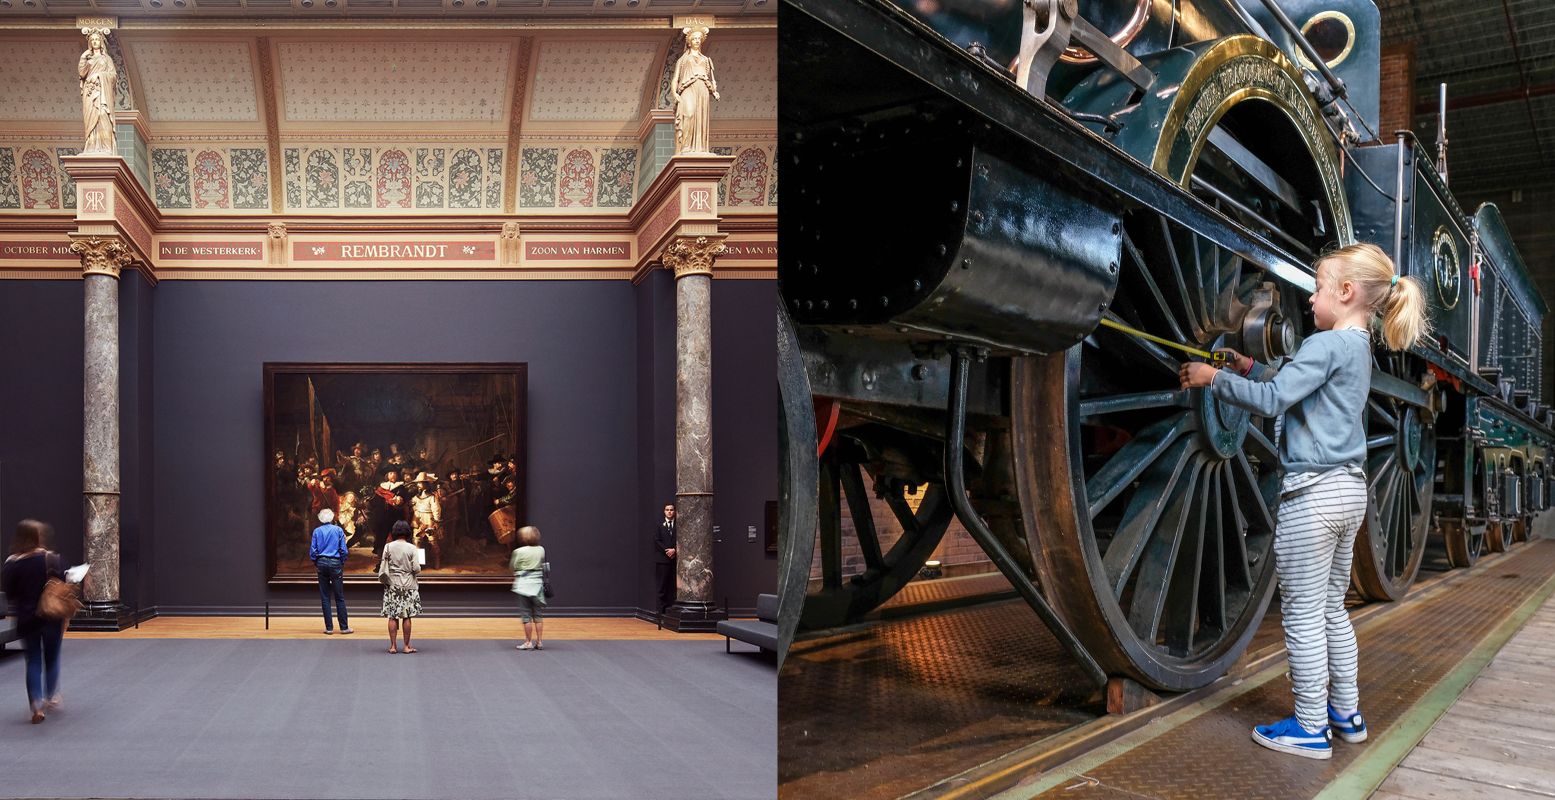 Het Rijksmuseum in Amsterdam (links) en het Spoorwegmuseum in Utrecht (rechts). Foto: Rijksmuseum © Erik Smits / Spoorwegmuseum